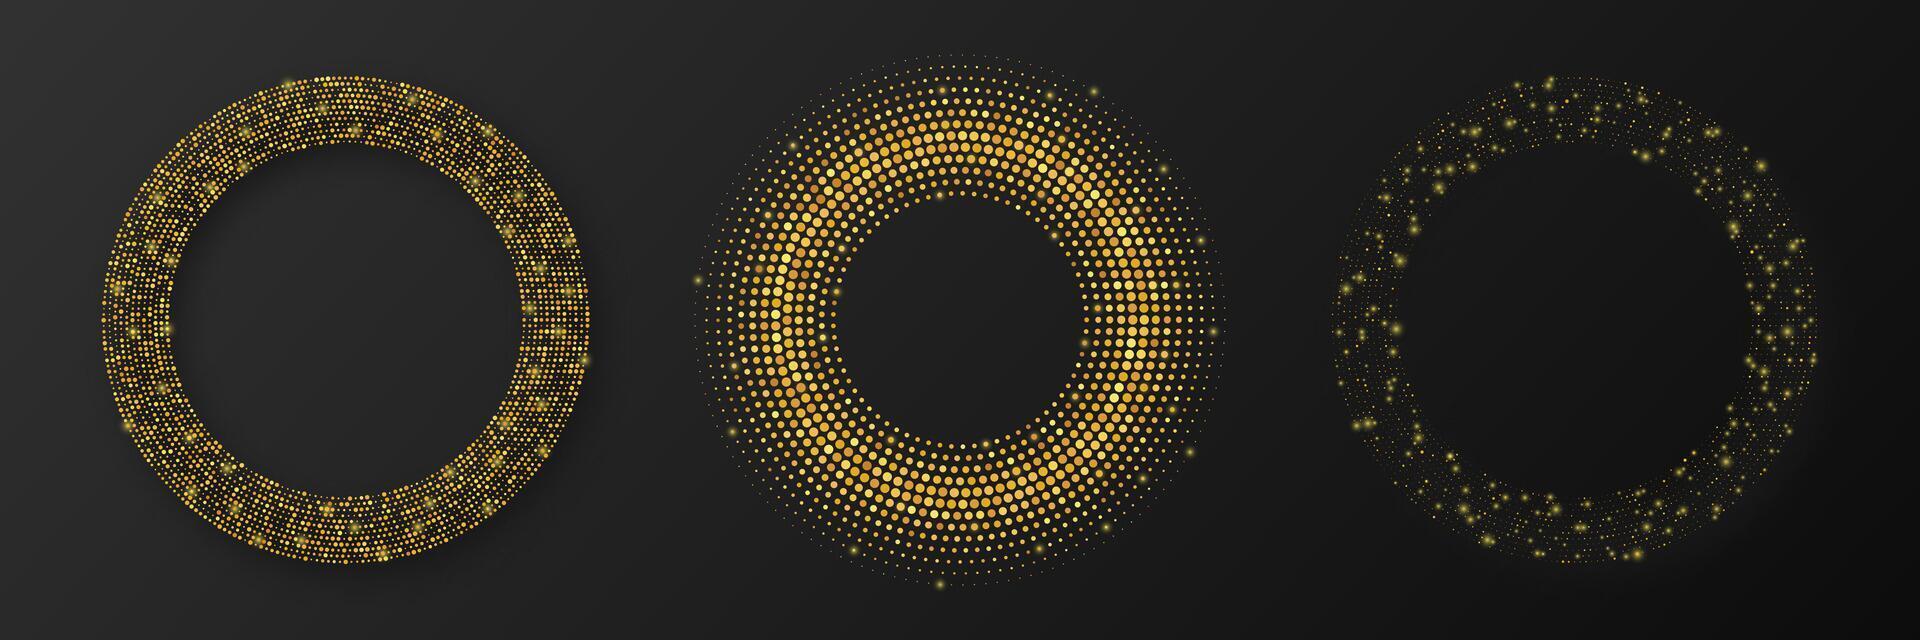 abstrakt Gold glühend Halbton gepunktet Hintergrund vektor